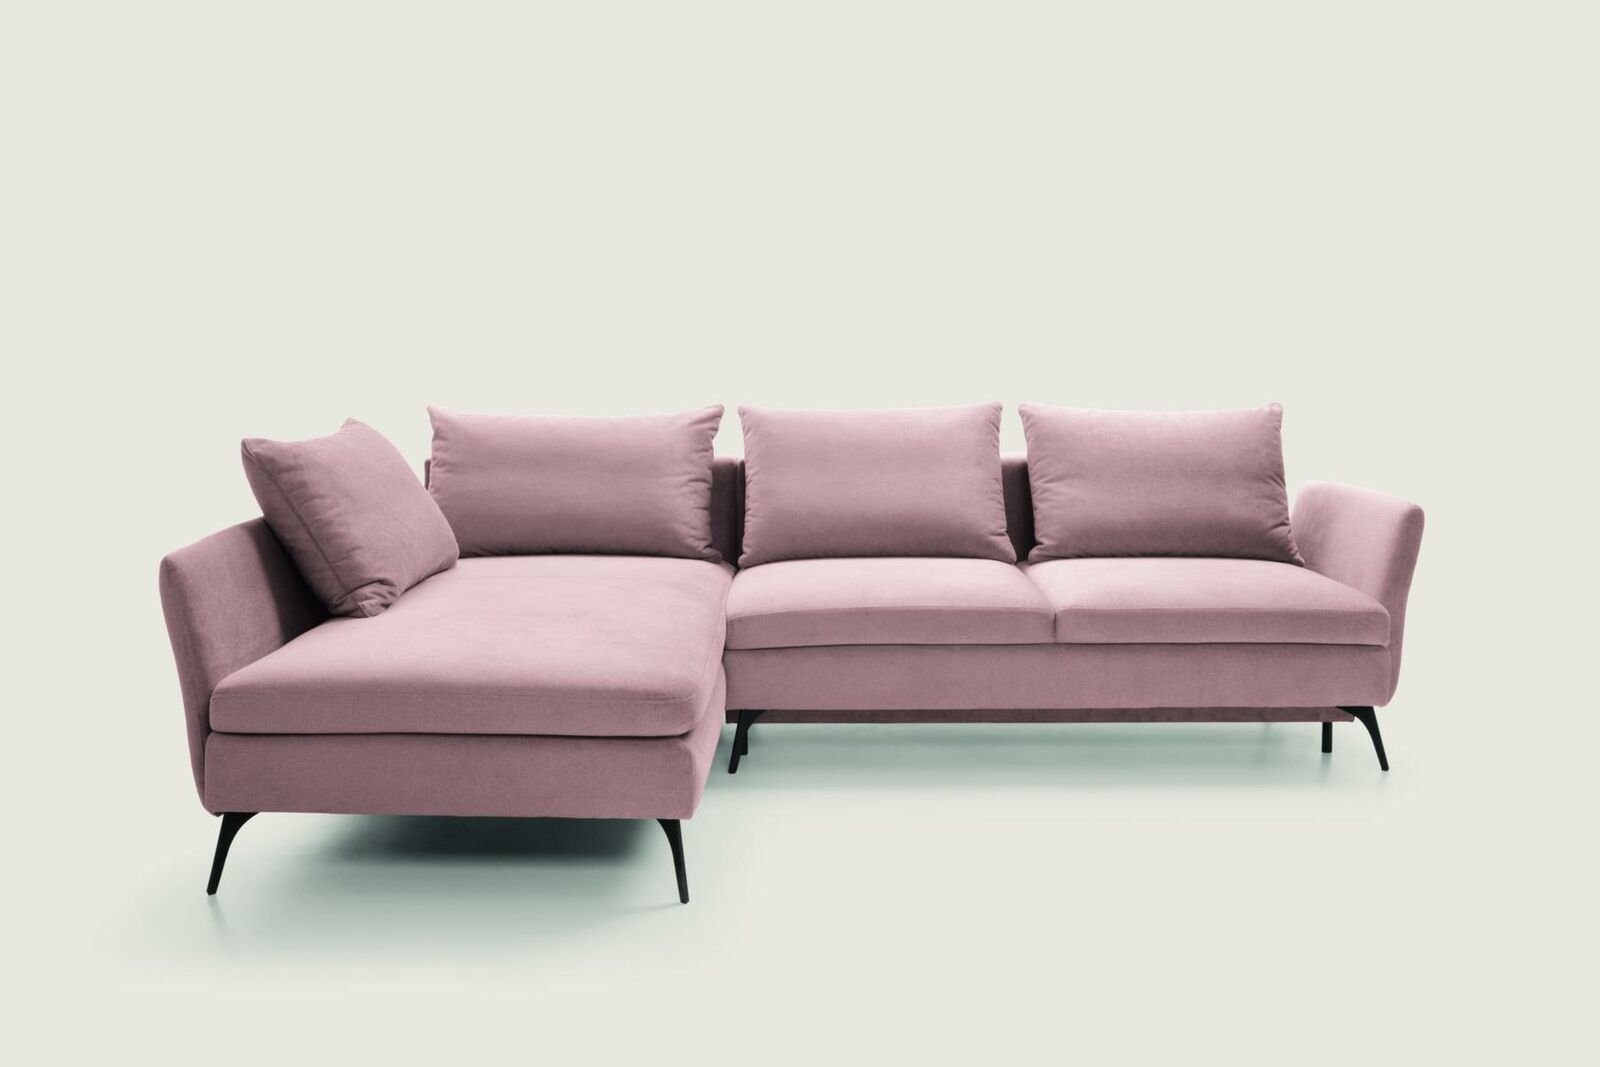 JVmoebel Ecksofa, Wohnzimmer Grün Möbel Textil Sofas Ecksofa L Form Couch Rosa